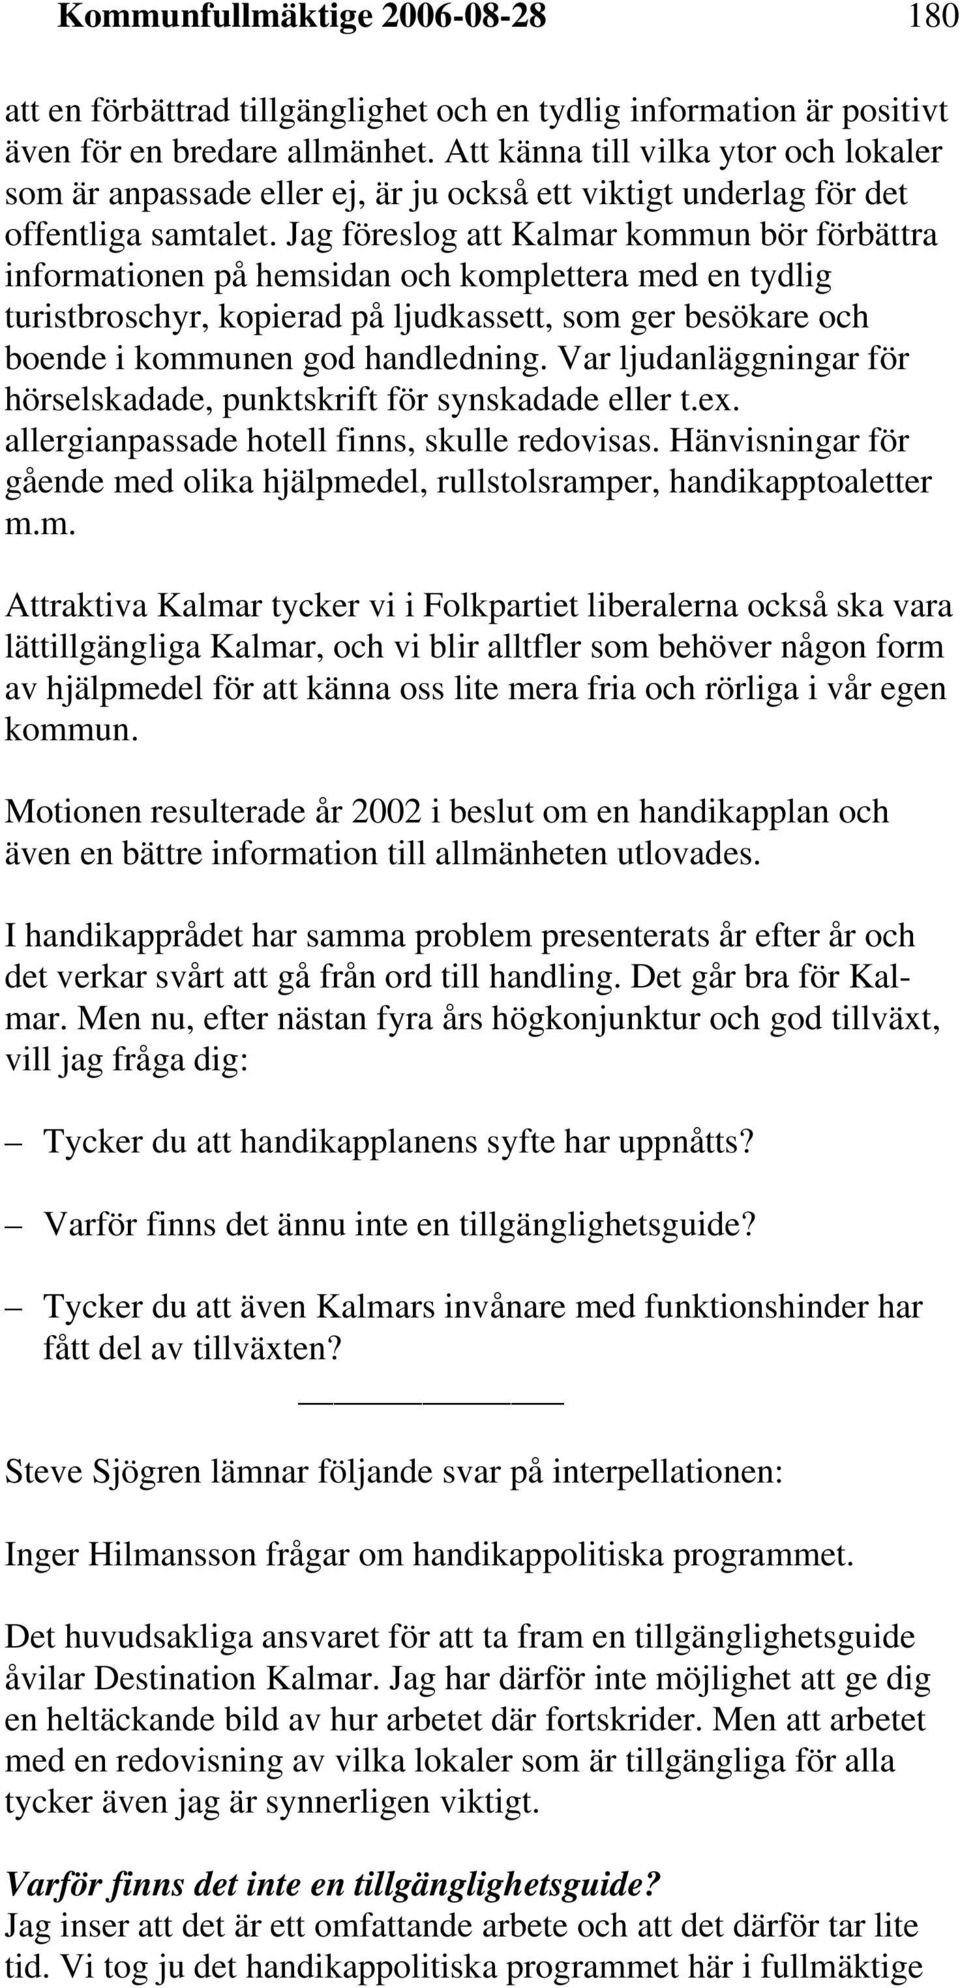 Jag föreslog att Kalmar kommun bör förbättra informationen på hemsidan och komplettera med en tydlig turistbroschyr, kopierad på ljudkassett, som ger besökare och boende i kommunen god handledning.